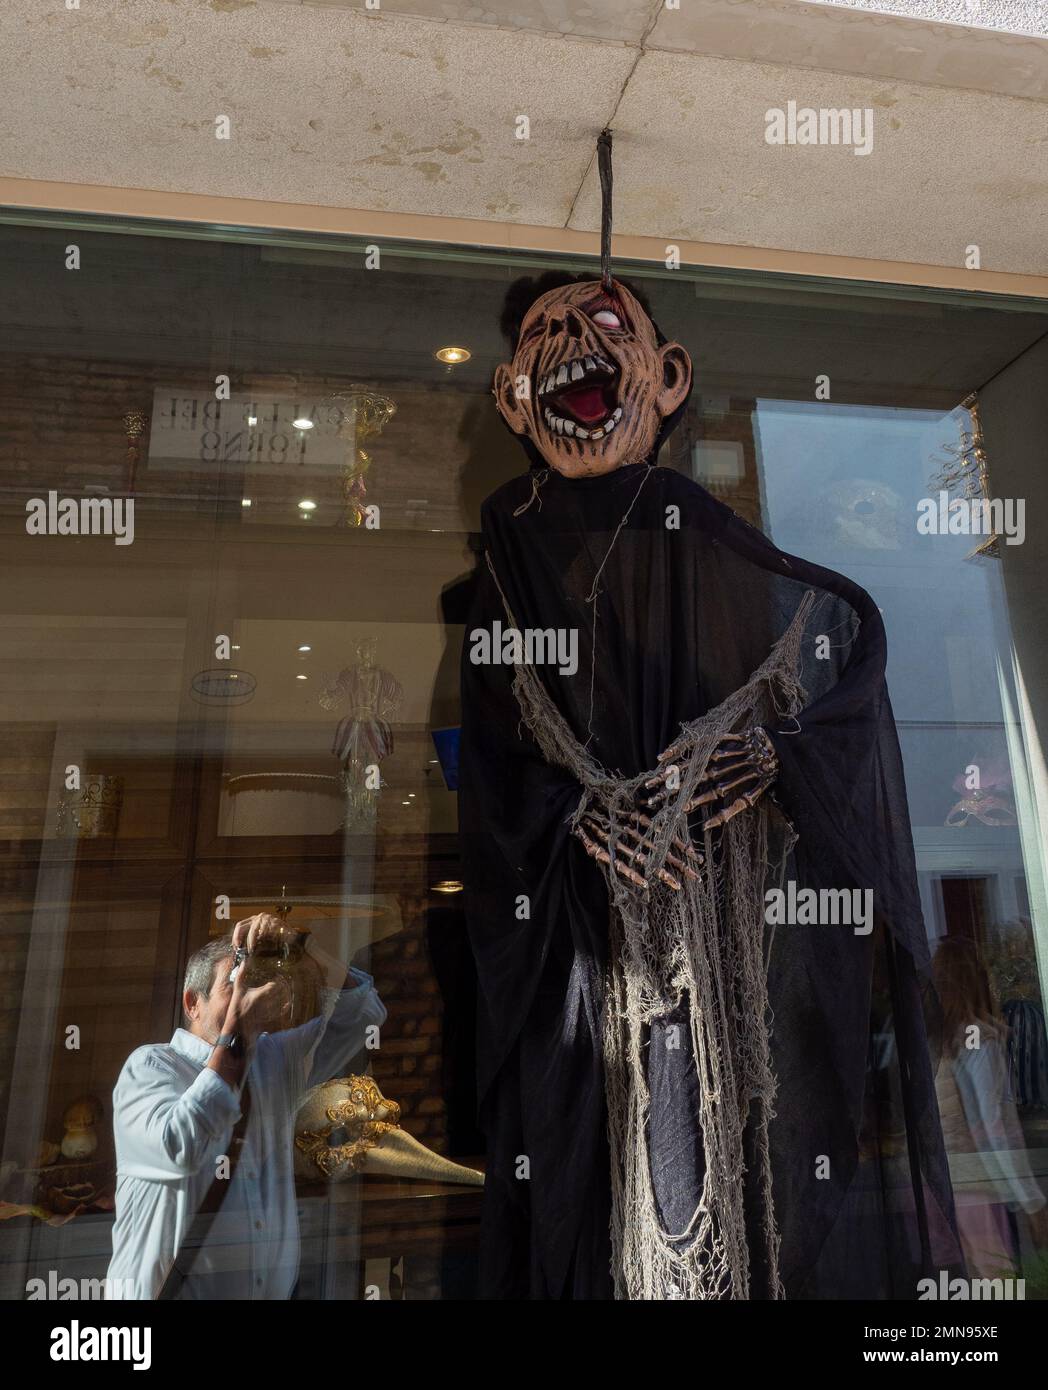 Décoration d'Halloween suspendue à l'extérieur dans un magasin. Concept Halloween. Banque D'Images